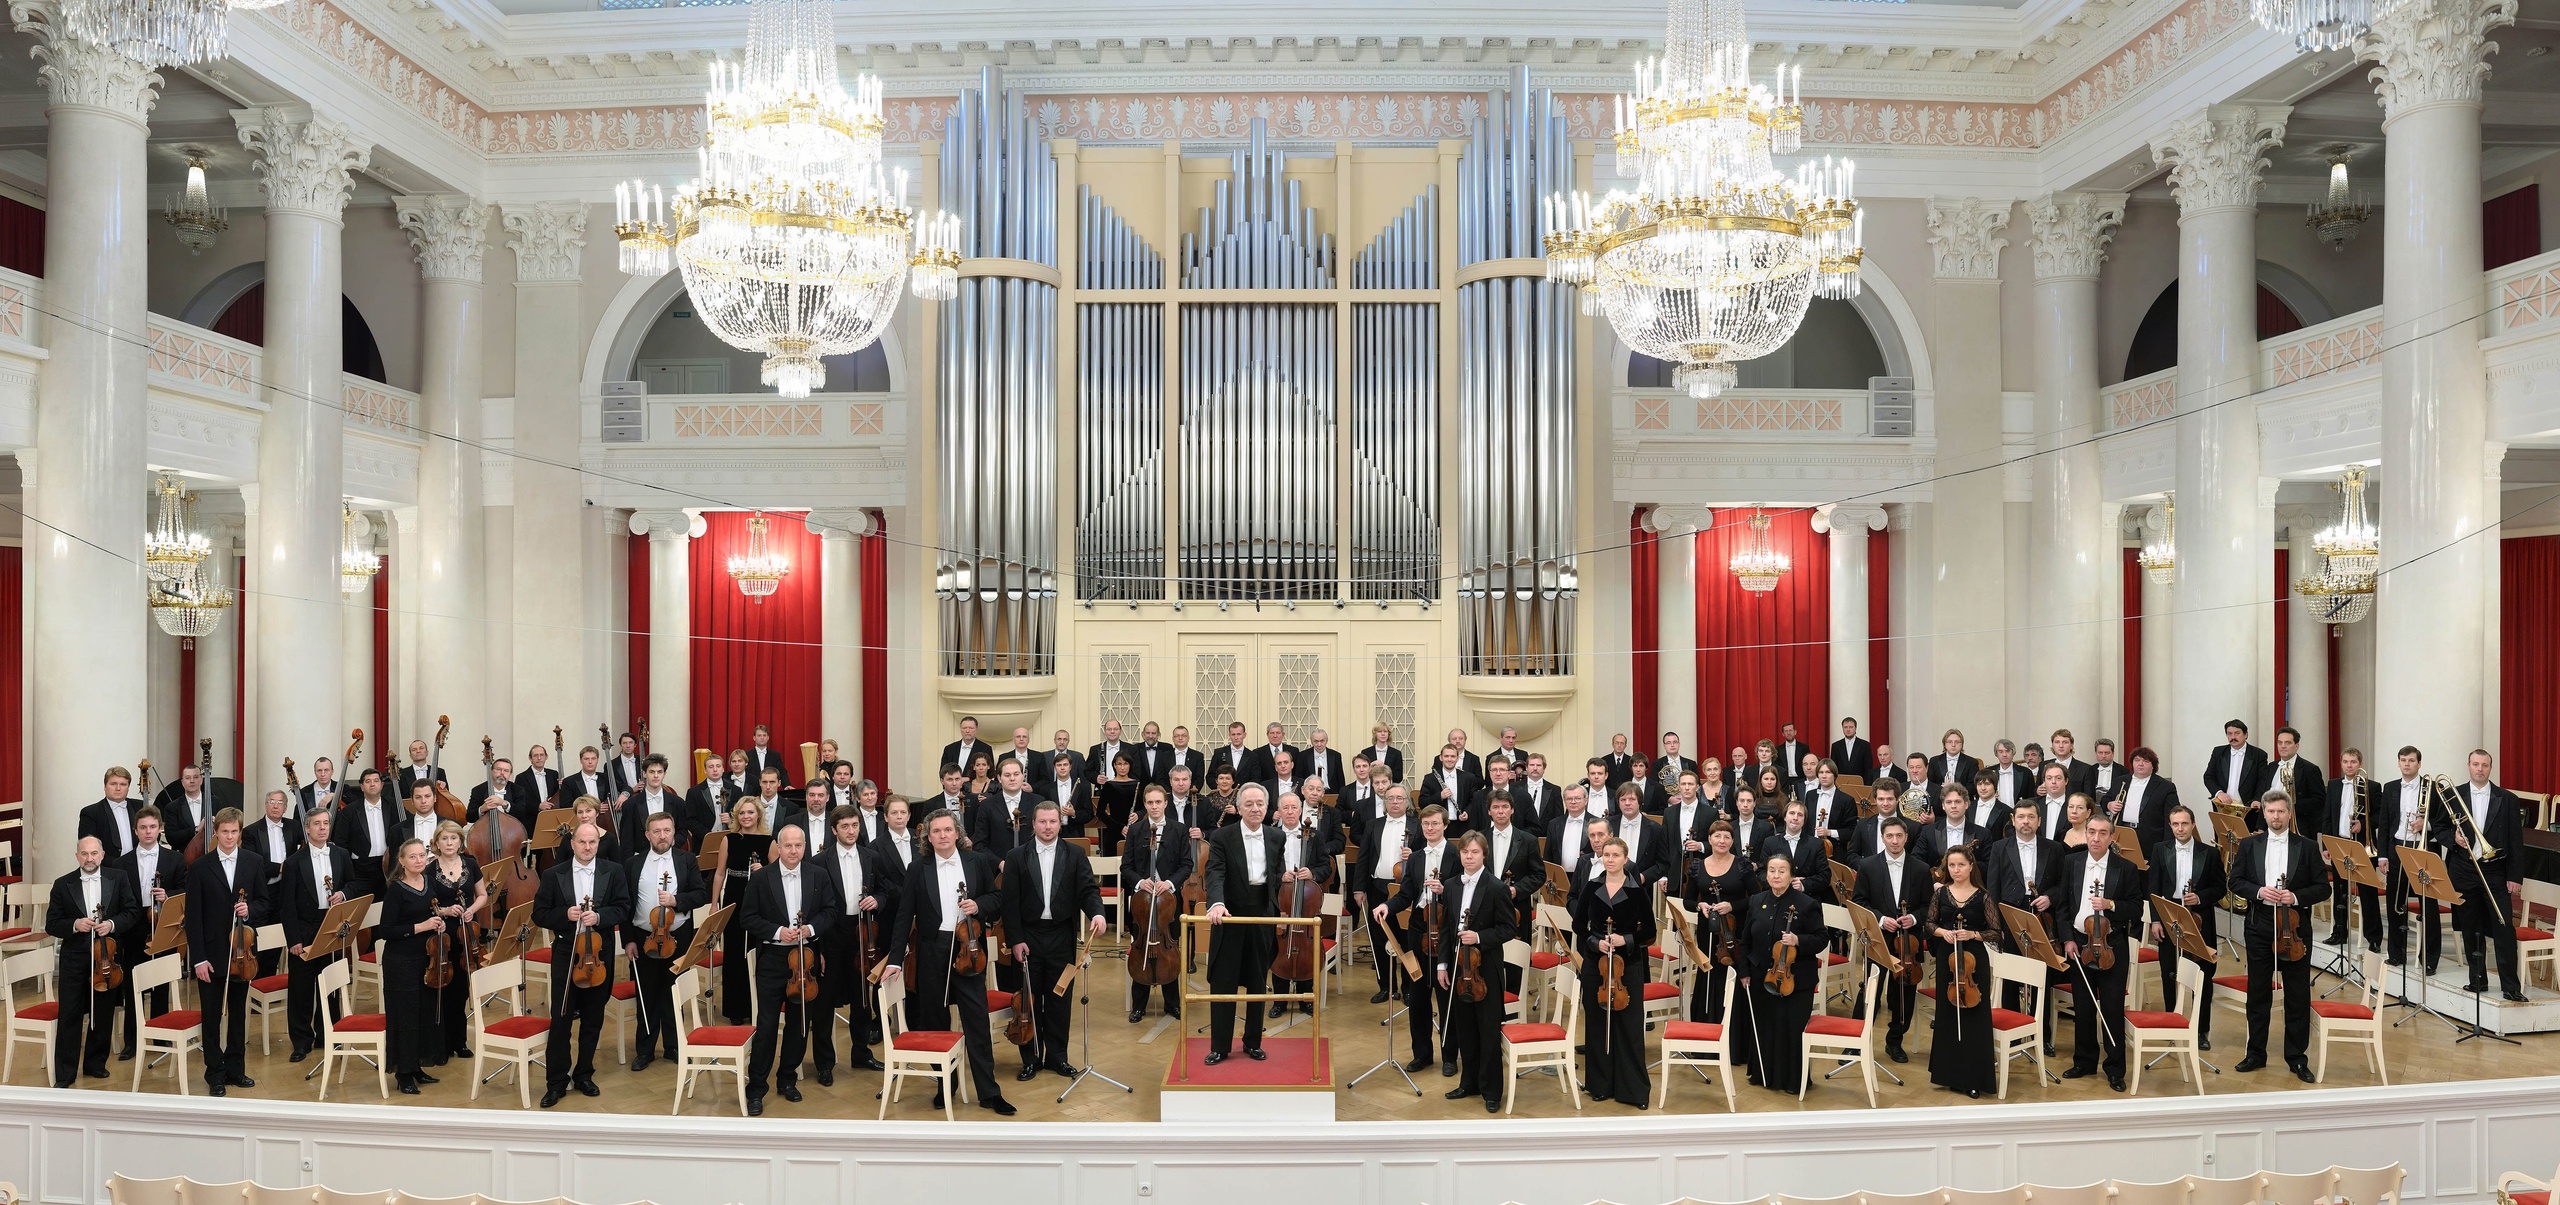 Вологжане увидят юбилейное исполнение Седьмой симфонии Шостаковича